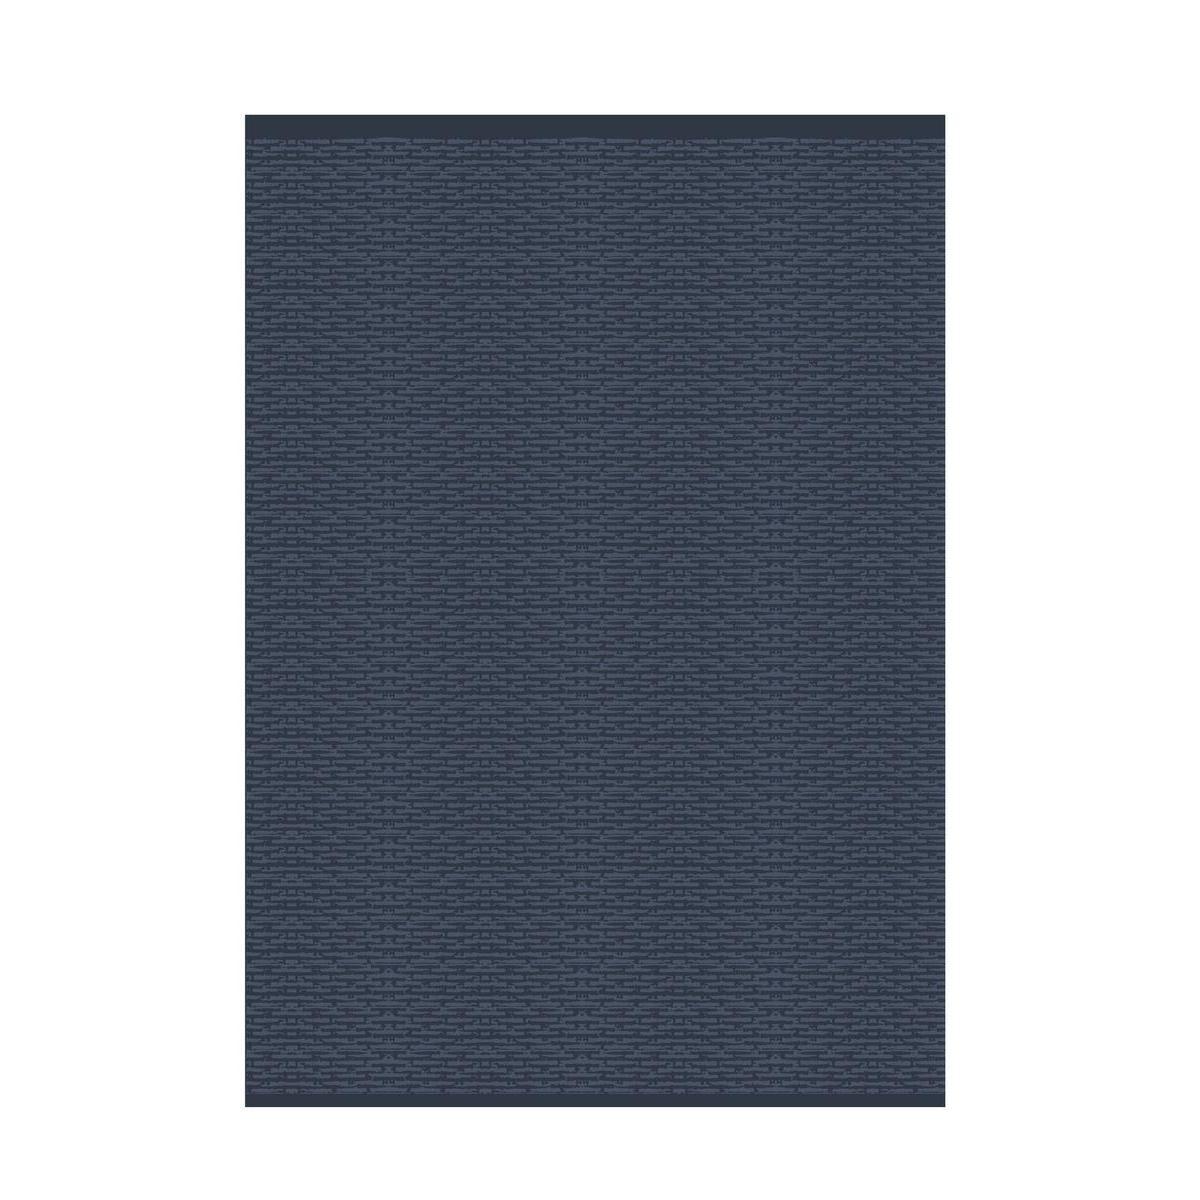 Tapis extérieur - Polypropylène - 120 x 170 cm - Bleu marine